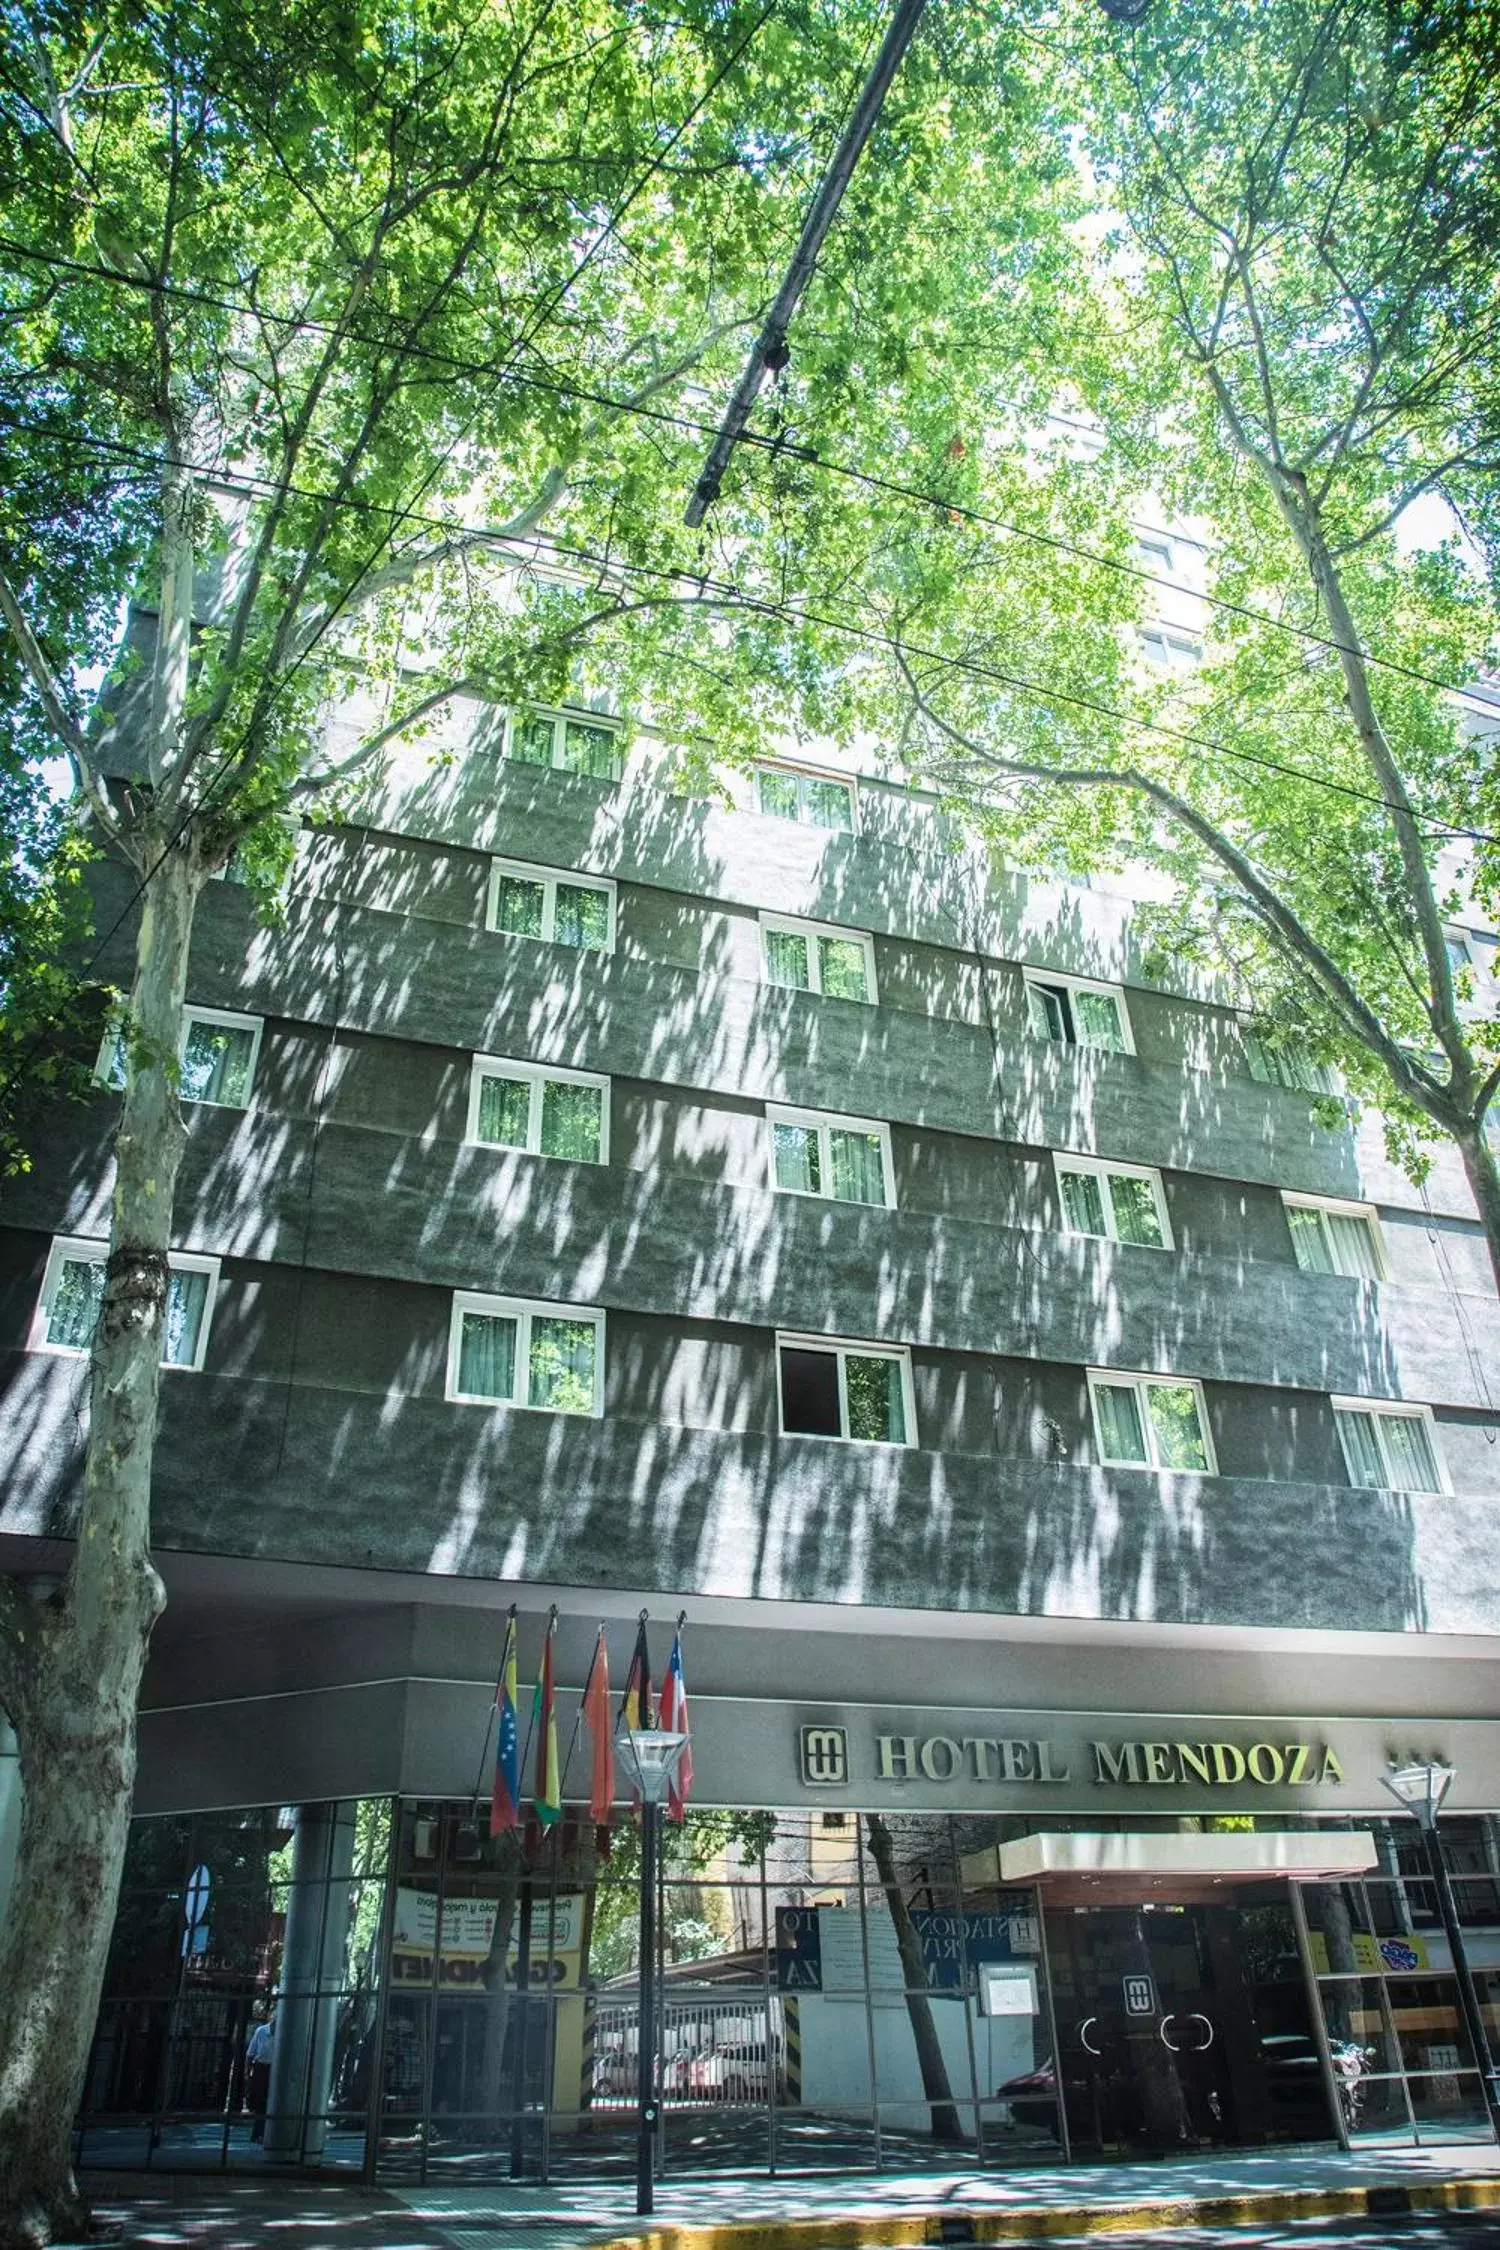 Property Building in Hotel Mendoza